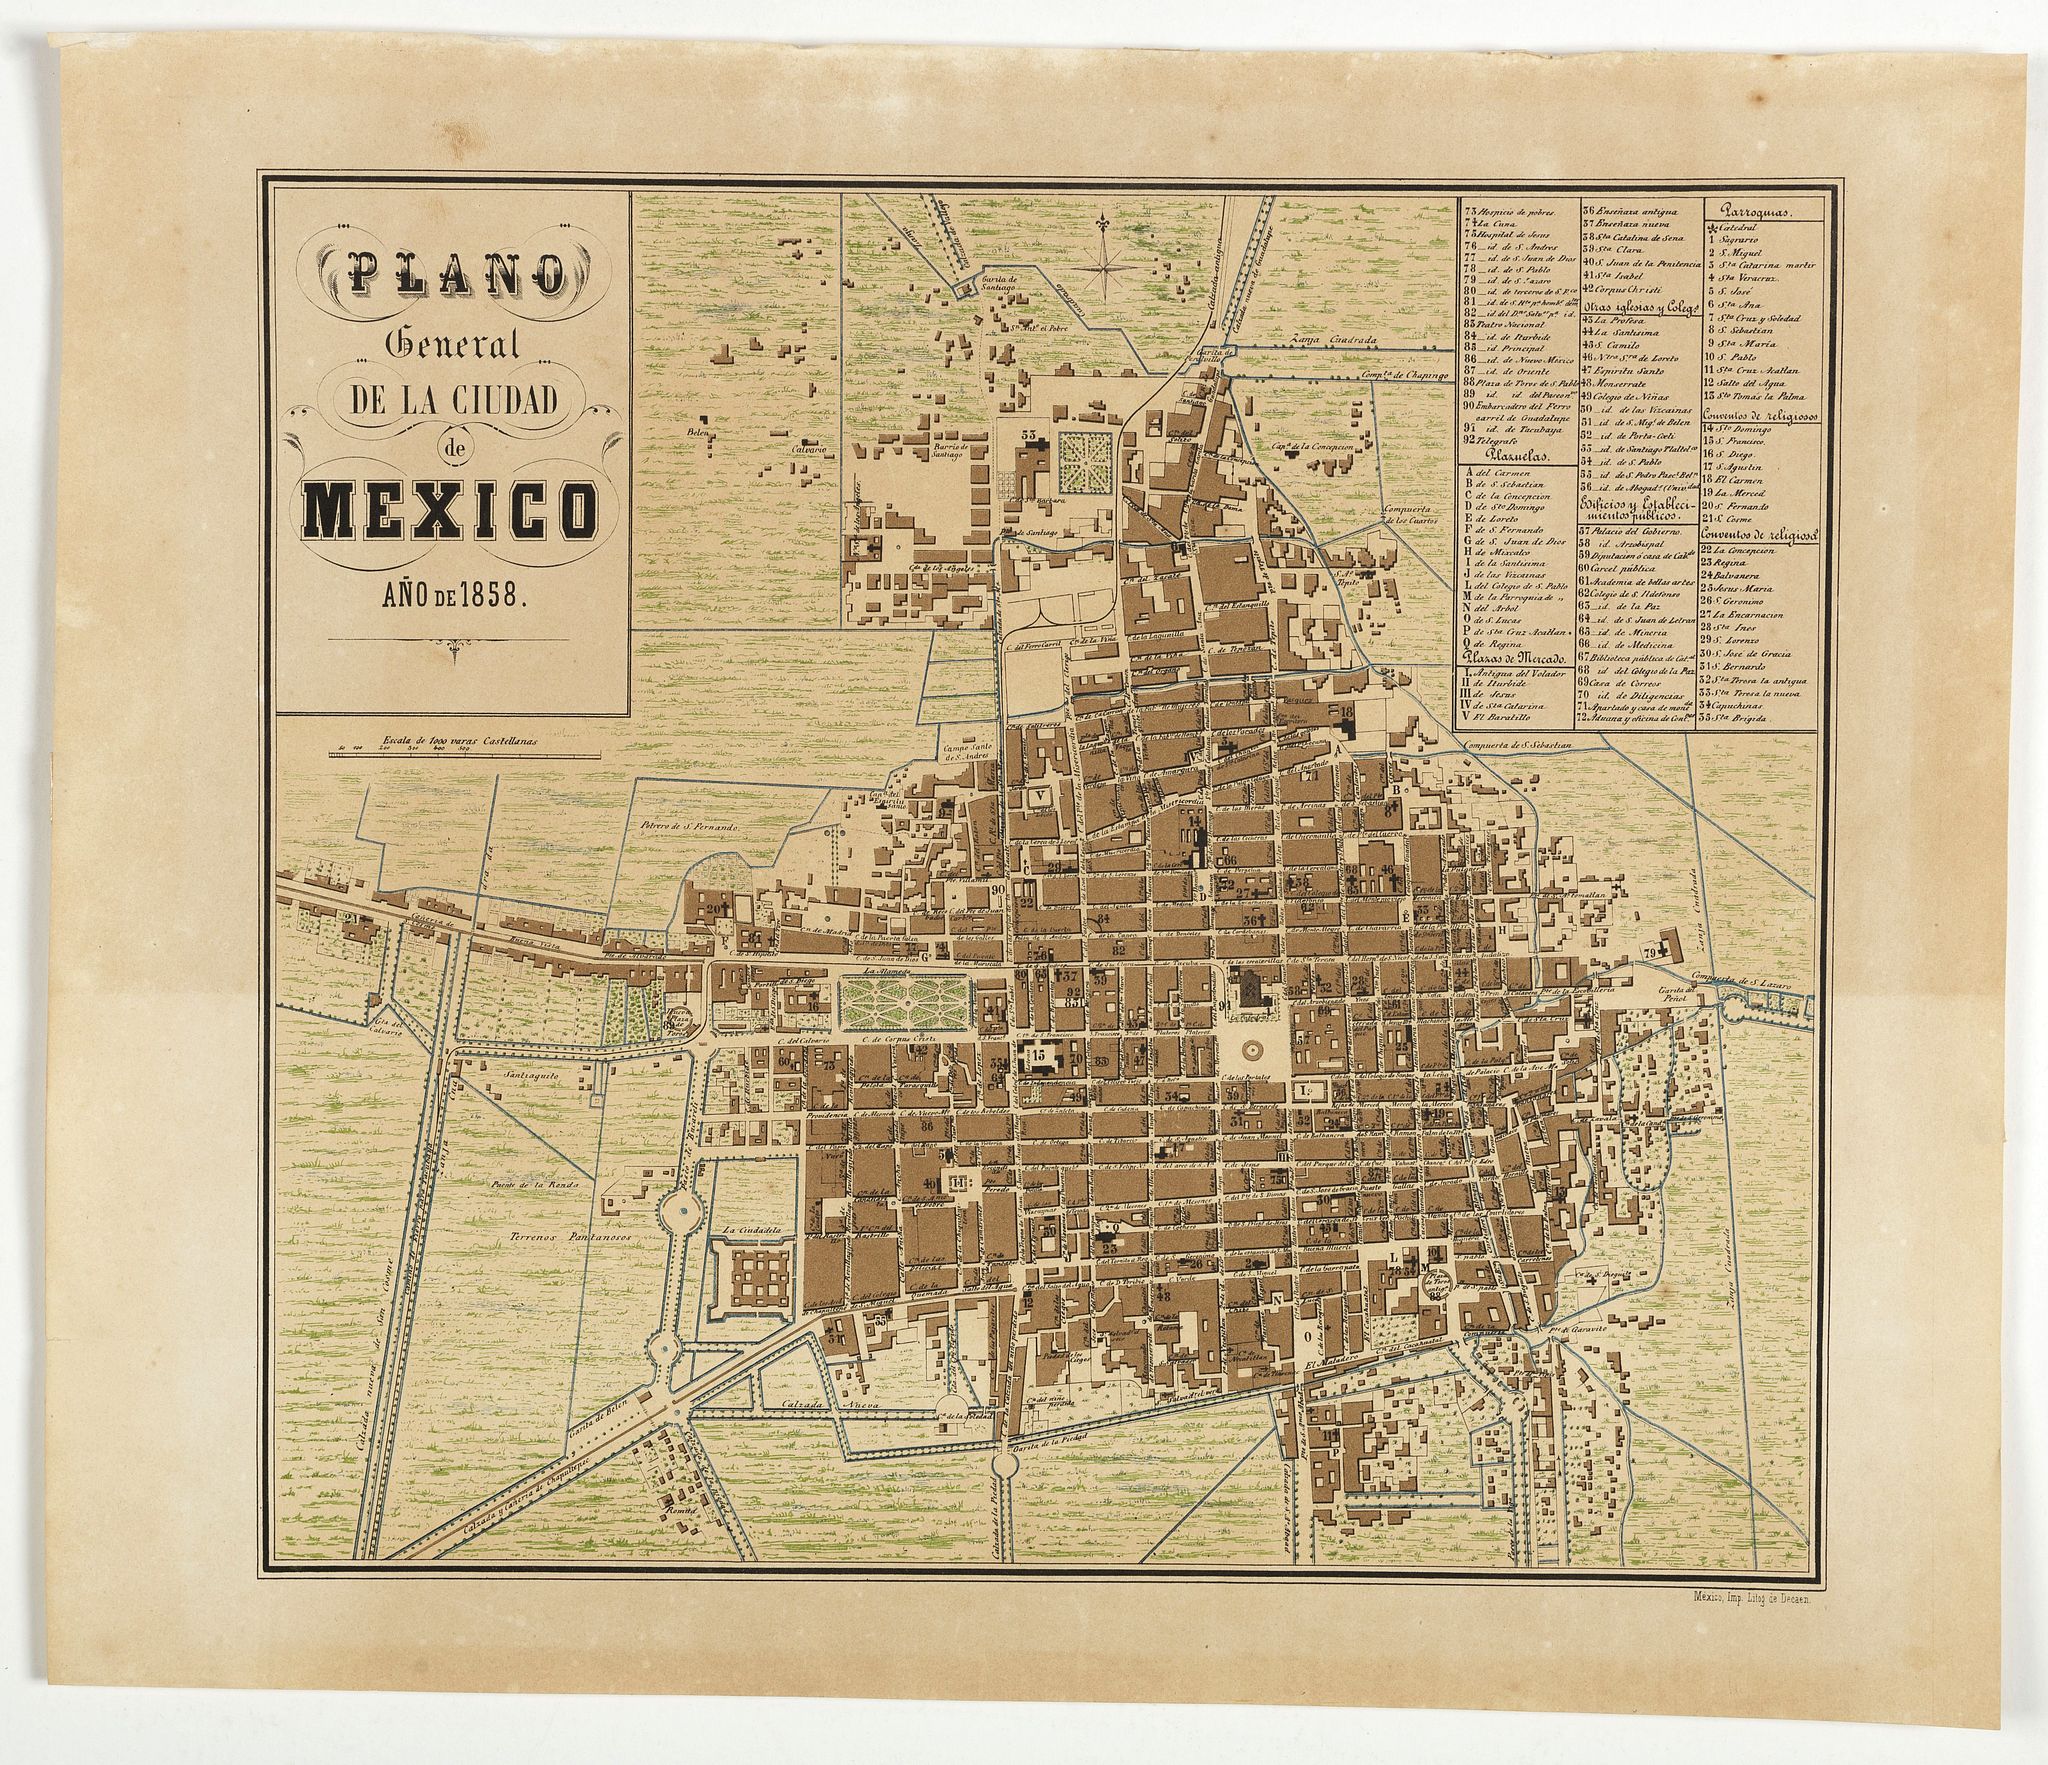 Plano General de la Ciudad de Mxico, ao de 1858